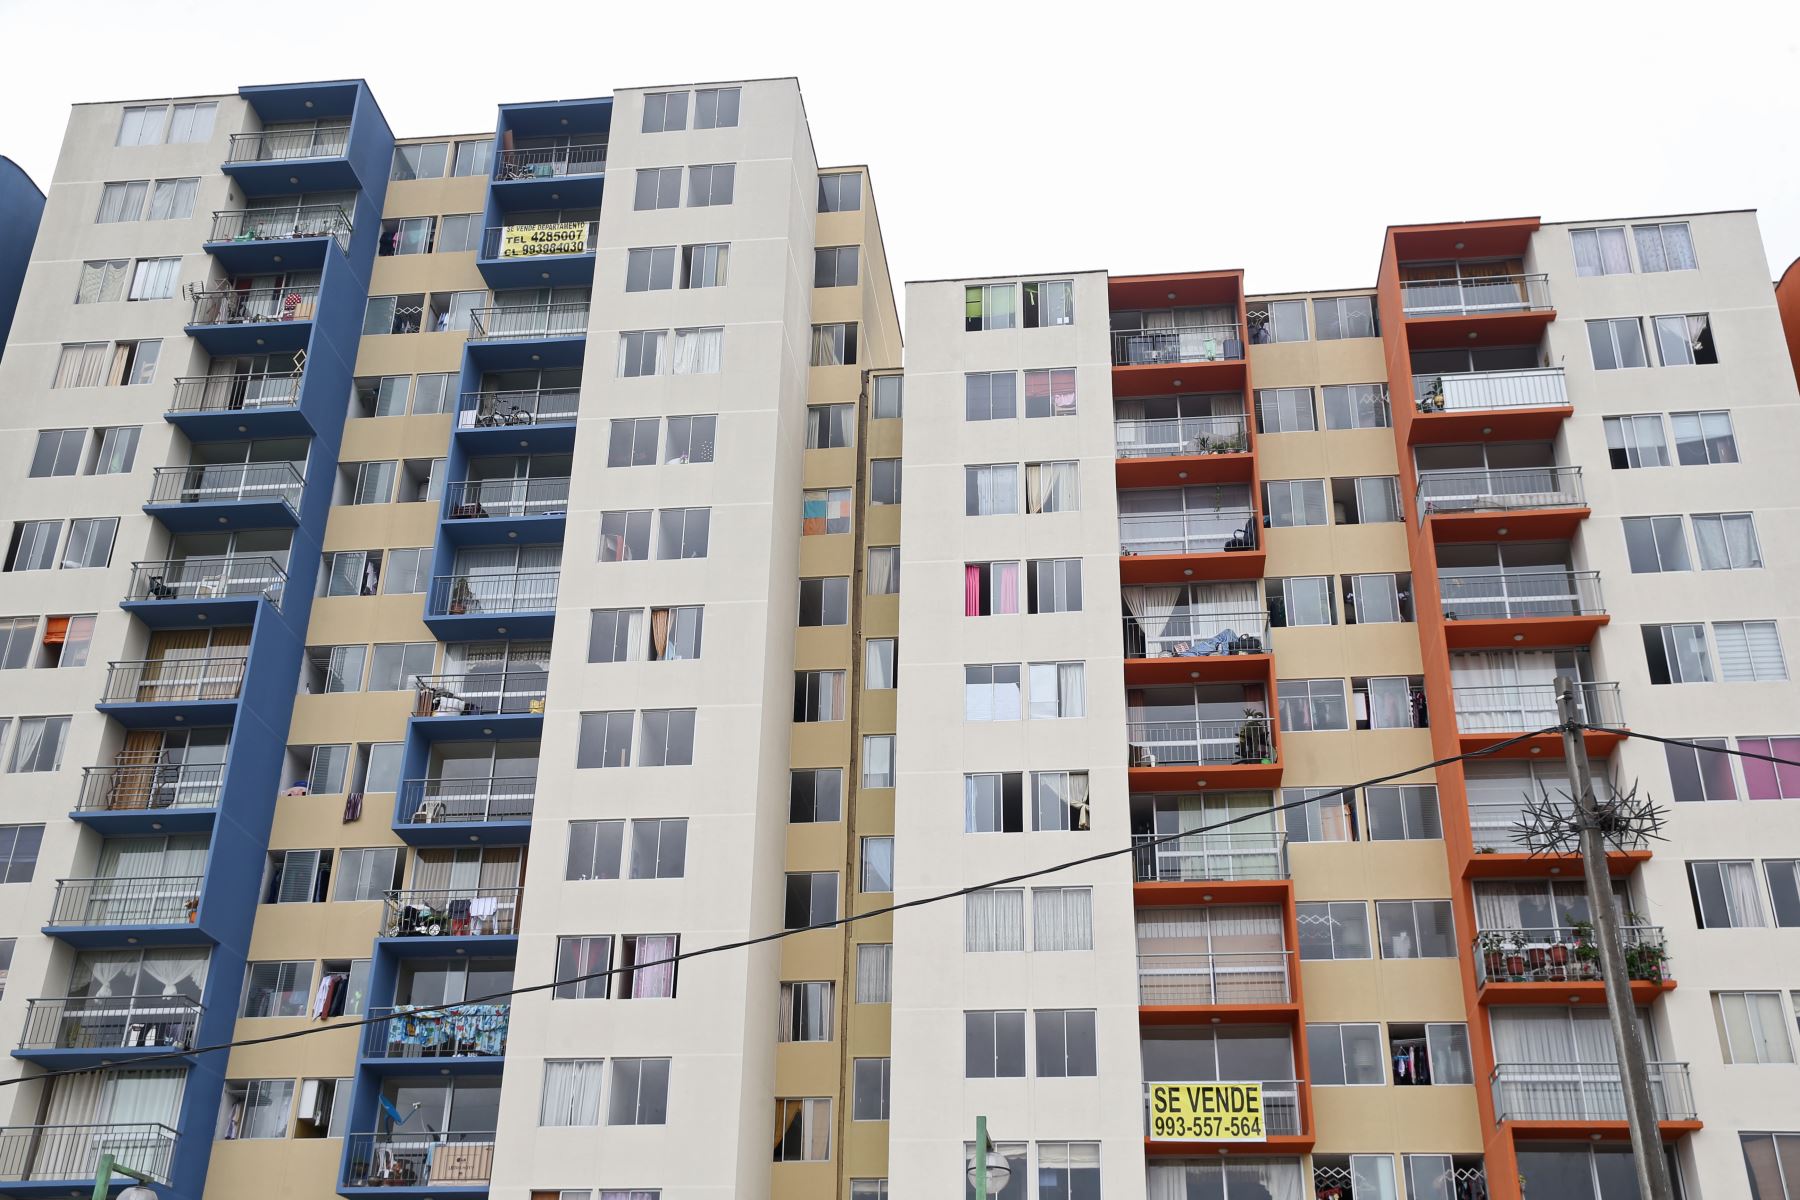 Edificios de vivienda, complejos de vivienda, conjunto habitacional, departamentos.Foto:ANDINA/Oscar Farje Gomero.